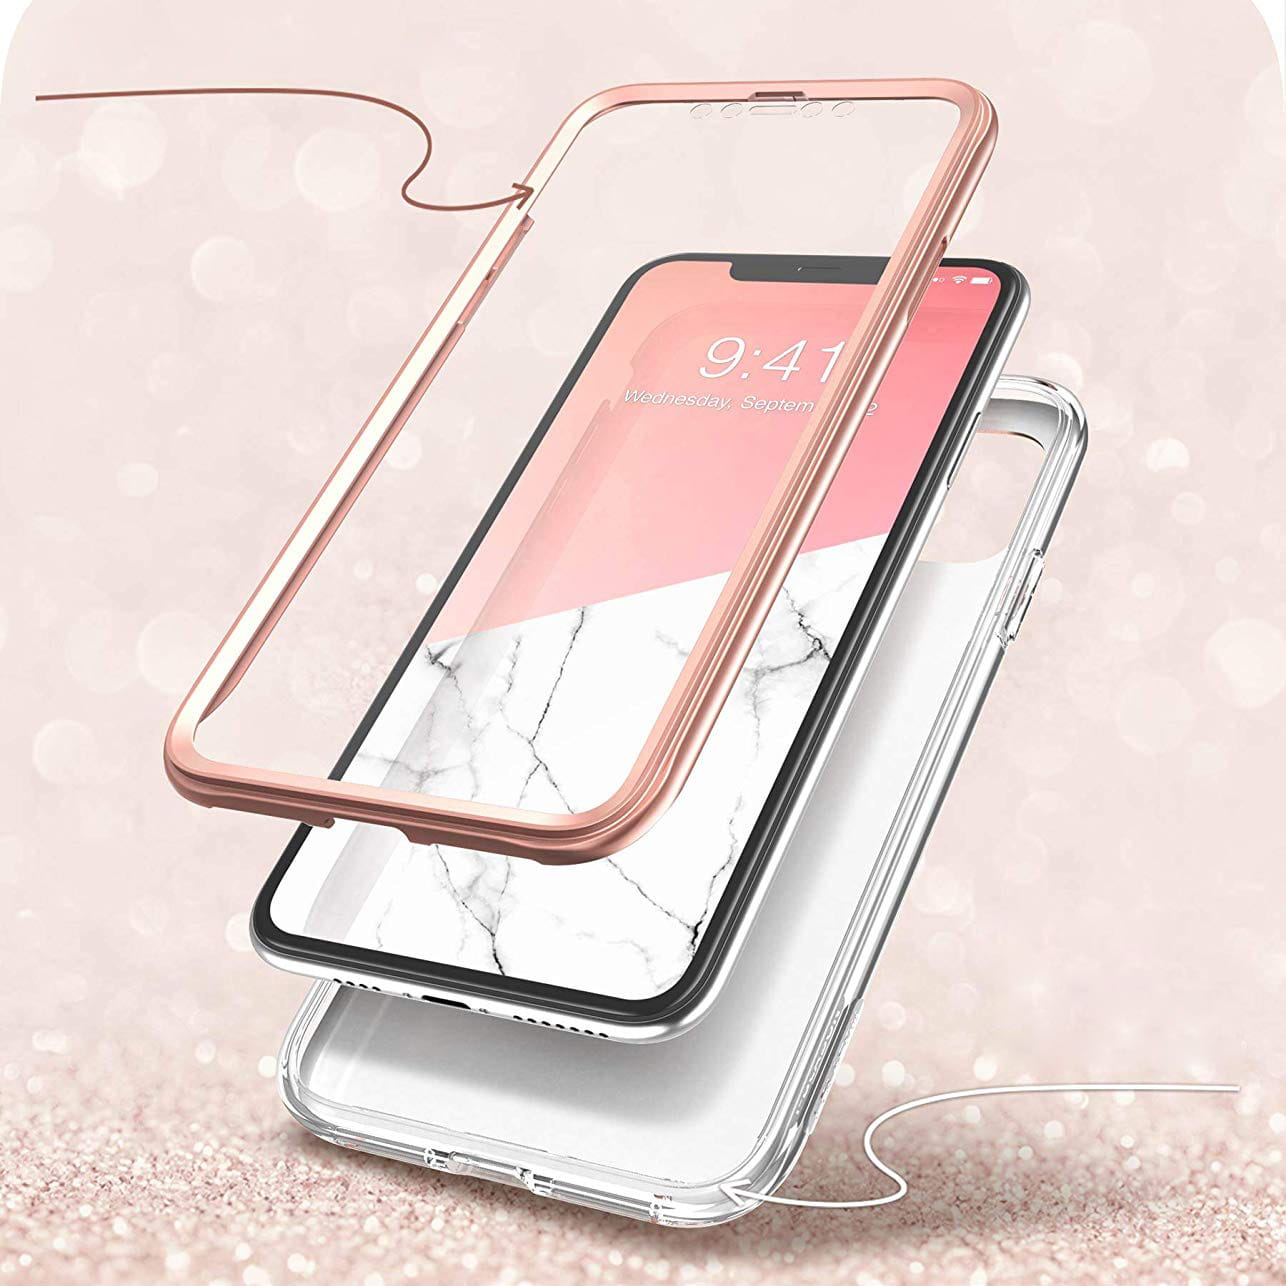 Gepanzerte Schutzhülle mit eingebautem Displayschutz Supcase i-Blason Cosmo für iPhone 11 rosa.